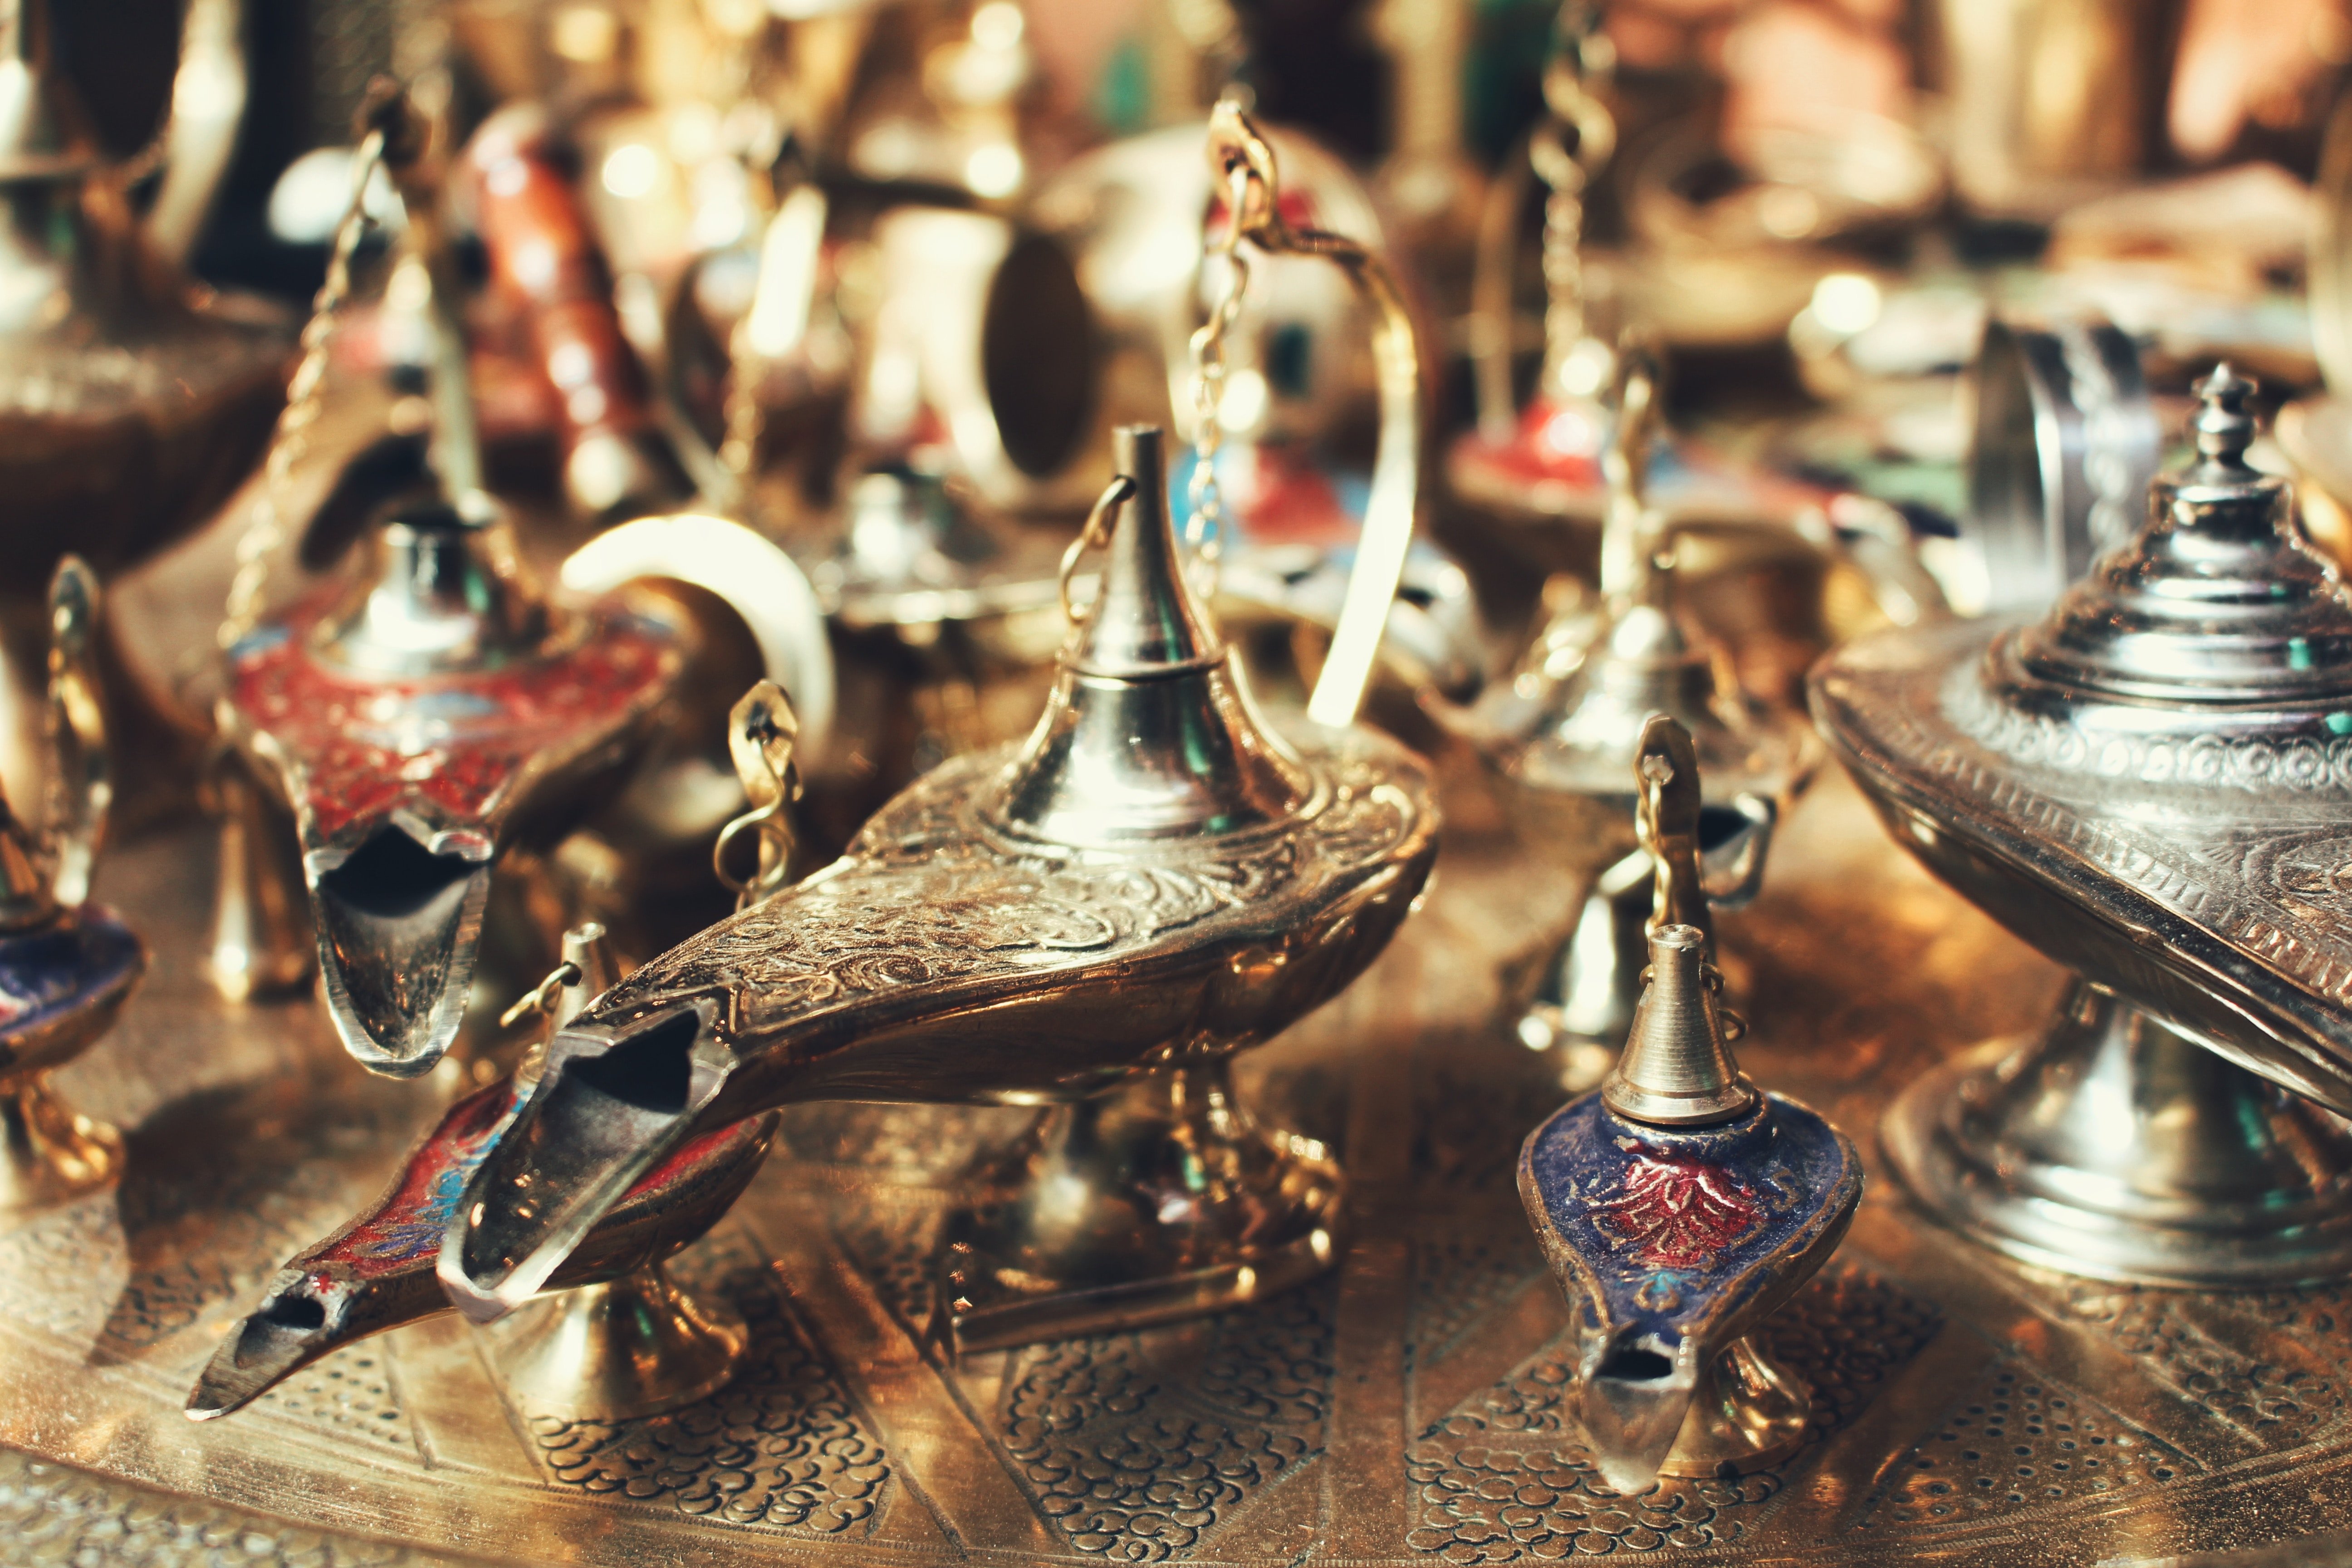 A collection of antique oil lamps | Source: Unsplash.com